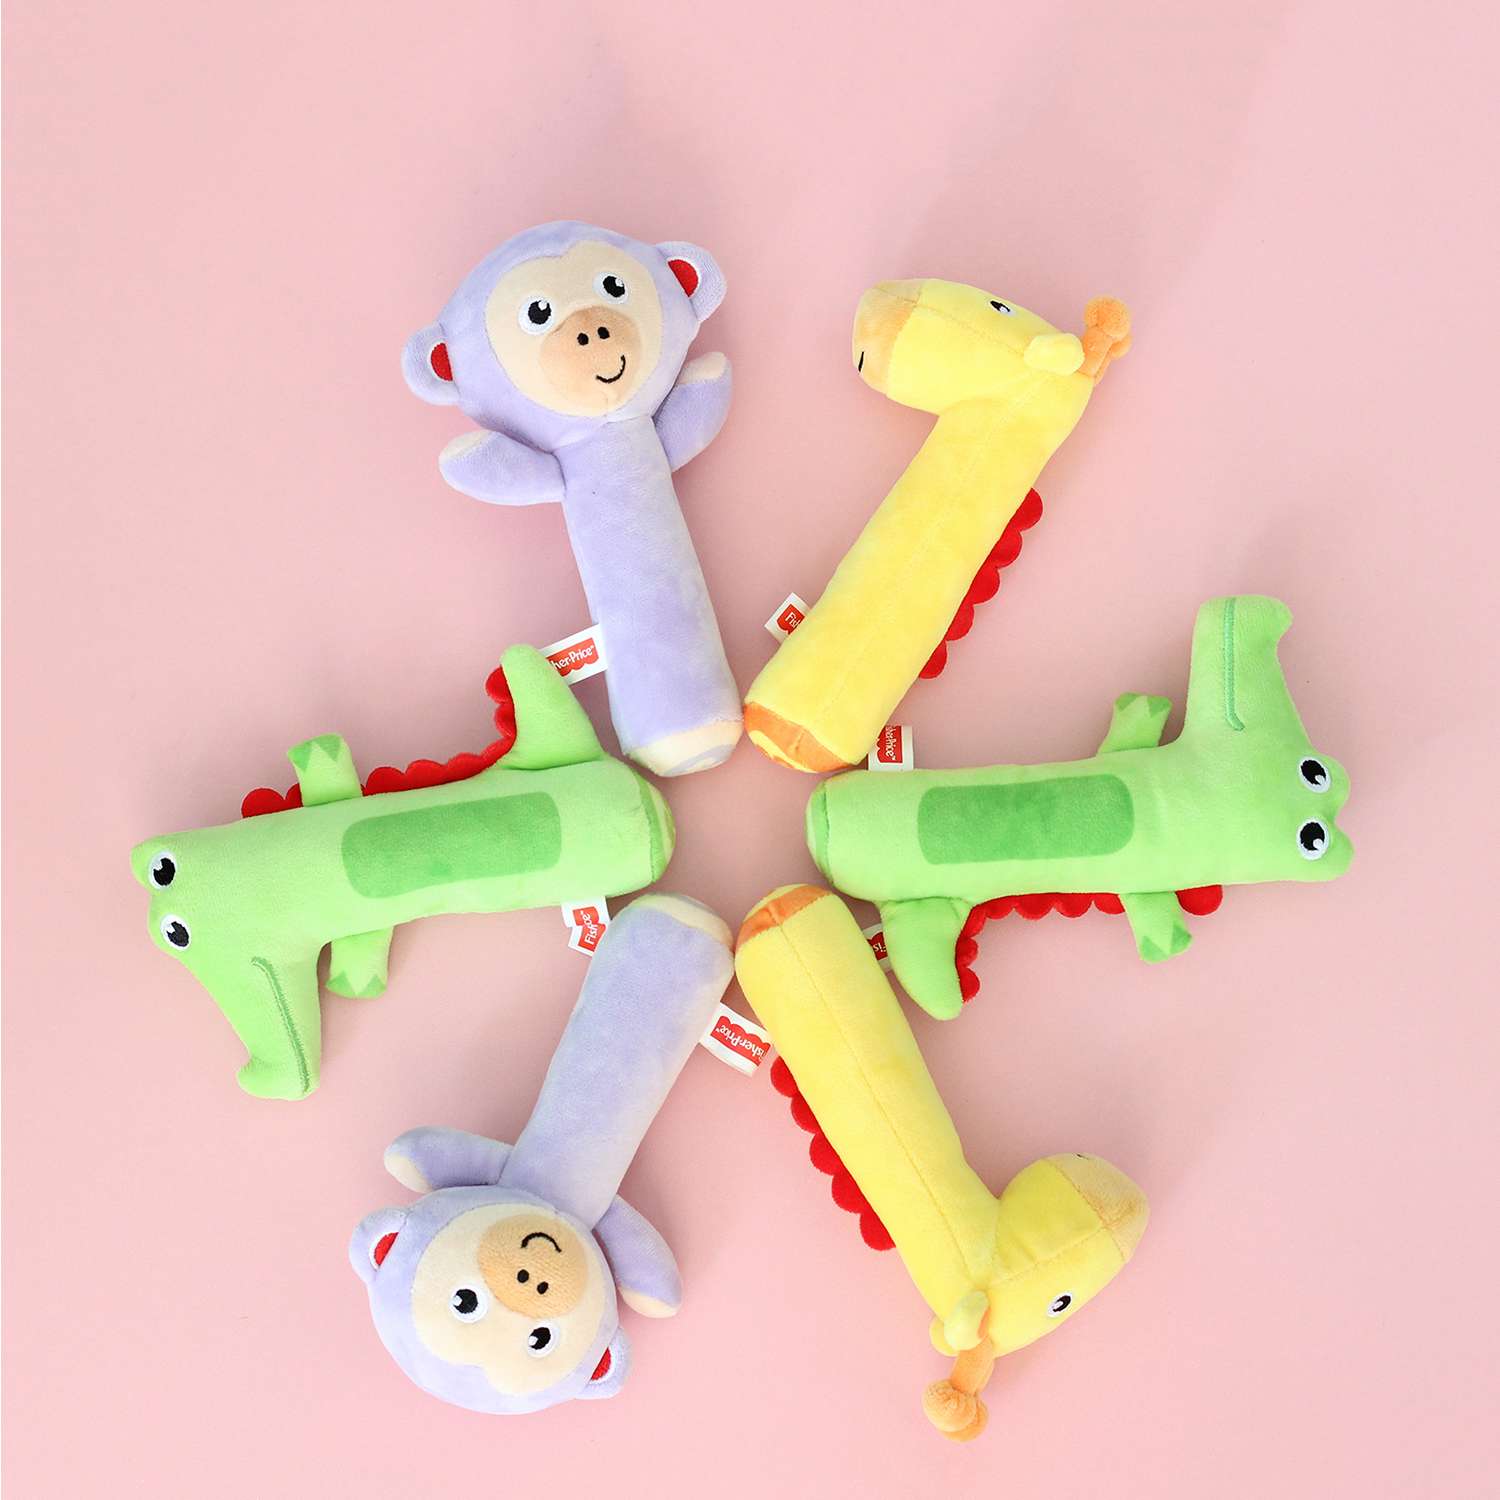 Погремушка-пищалка Fisher Price Обезьянка развивающая мягкая игрушка для детей 0+ - фото 5